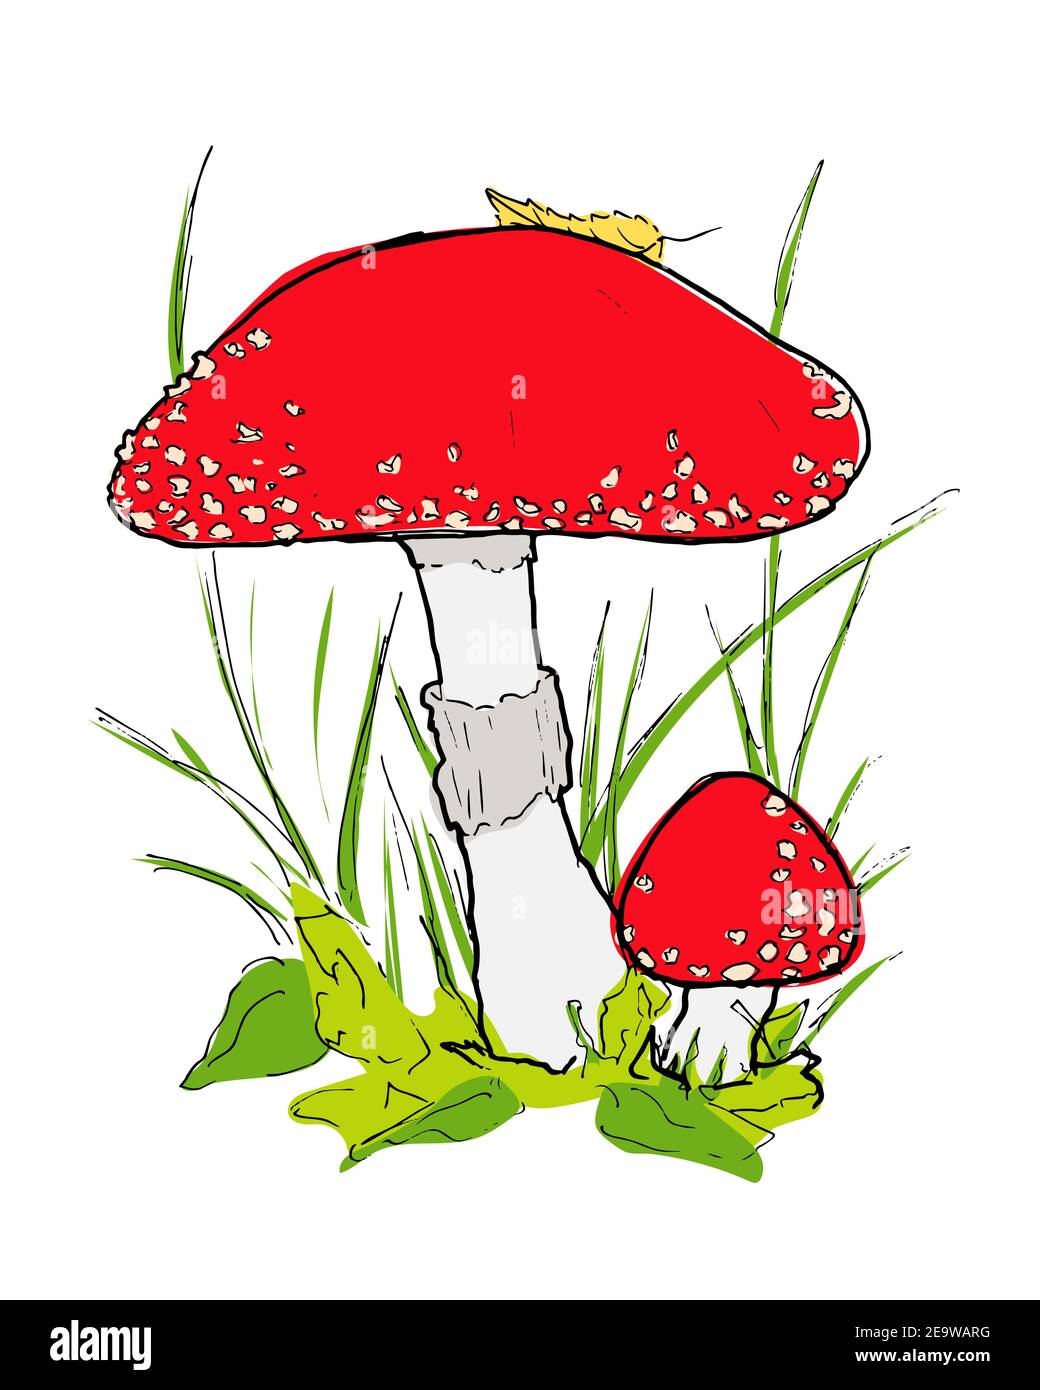 Red amanita mushroom illustration in the grass Stock Vector